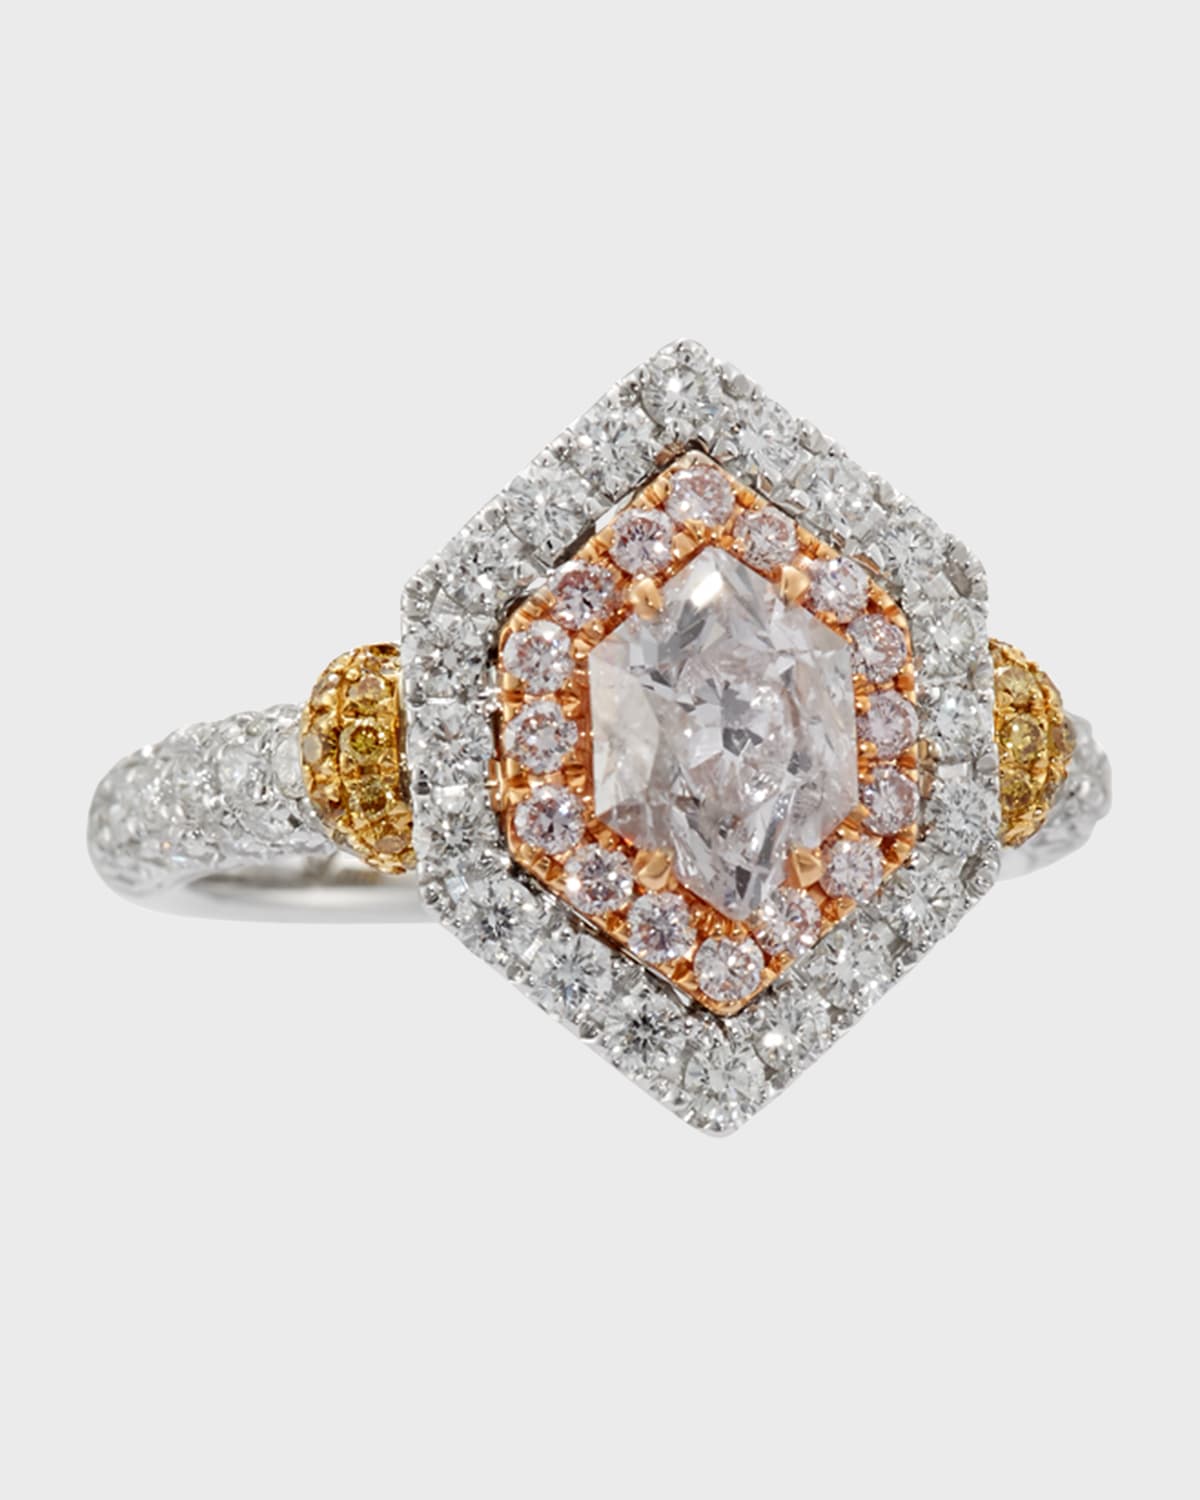 Alexander Laut Fancy-Cut Pink Diamond Ring in 18K Gold, Size 6